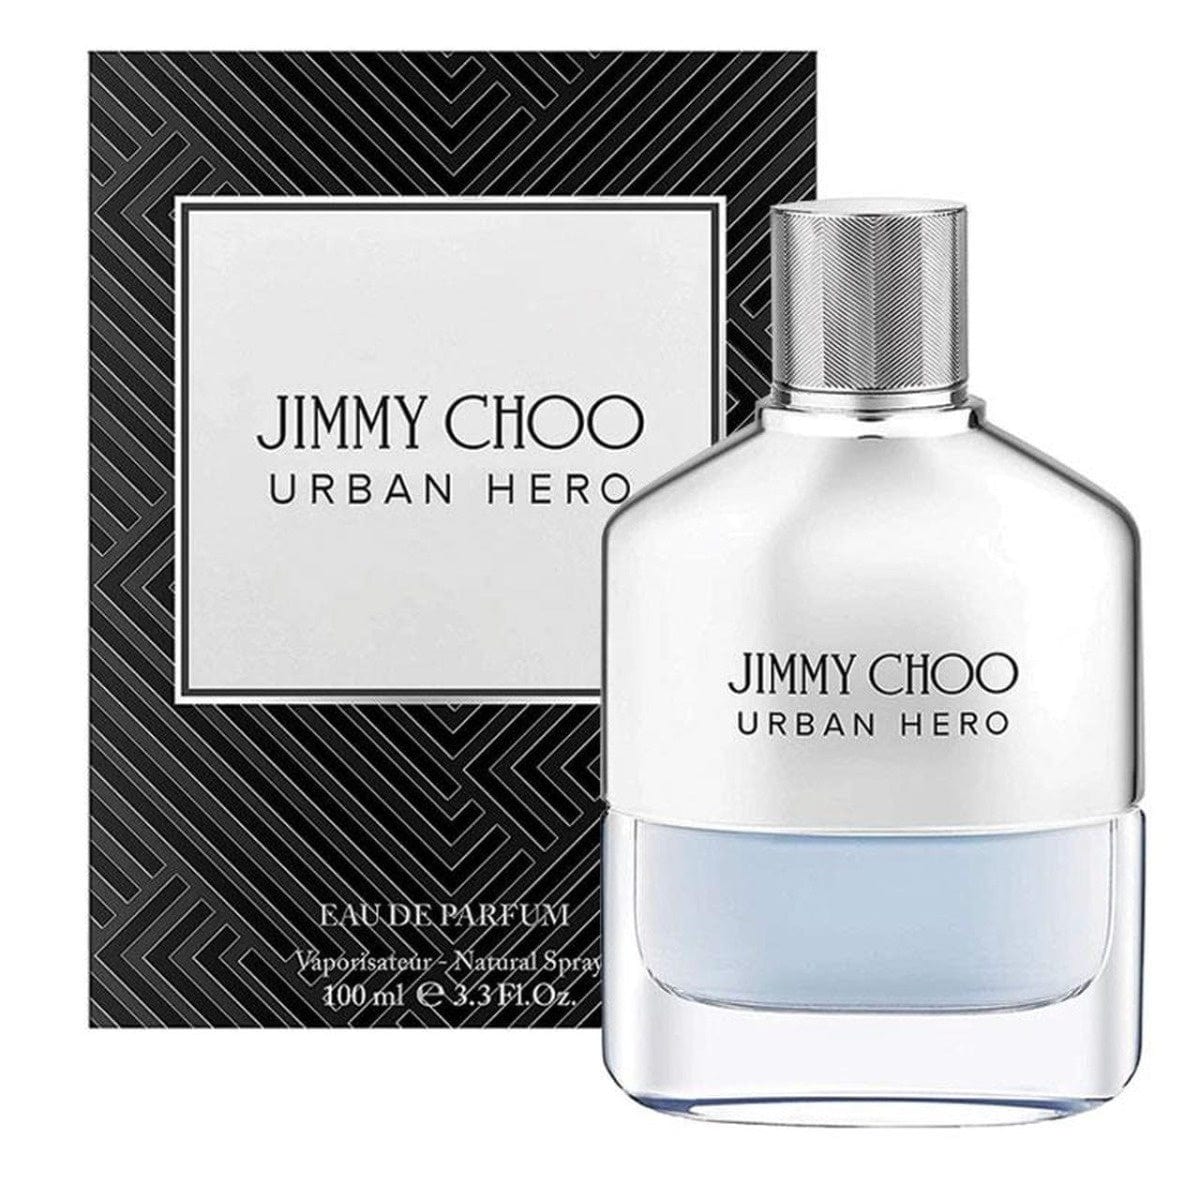 Jimmy Choo Urban Hero 100ml Edp for Men